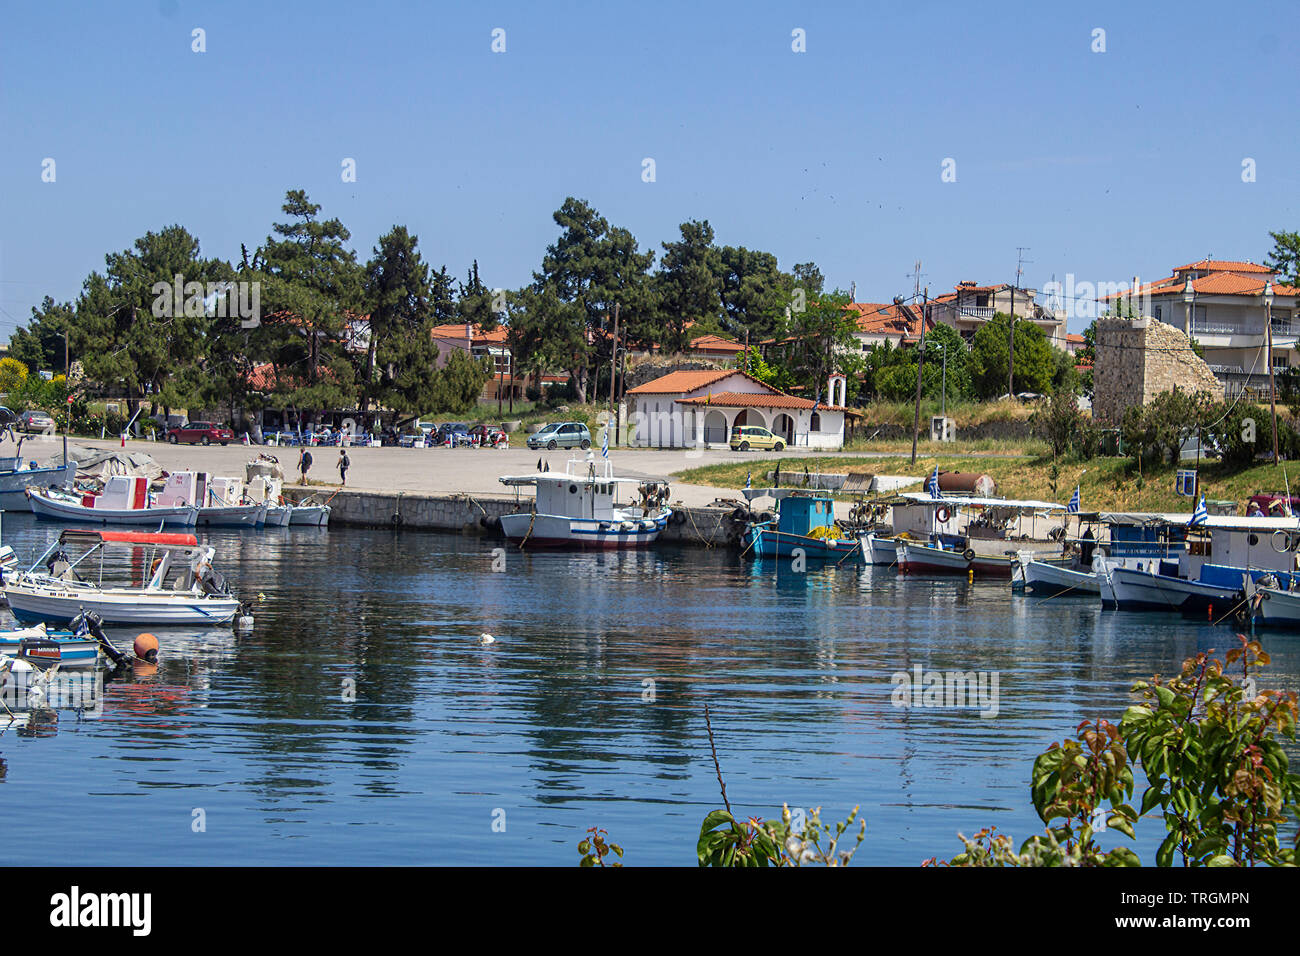 The small boat marina at Nea Potidea, Halkidiki, Greece. Stock Photo